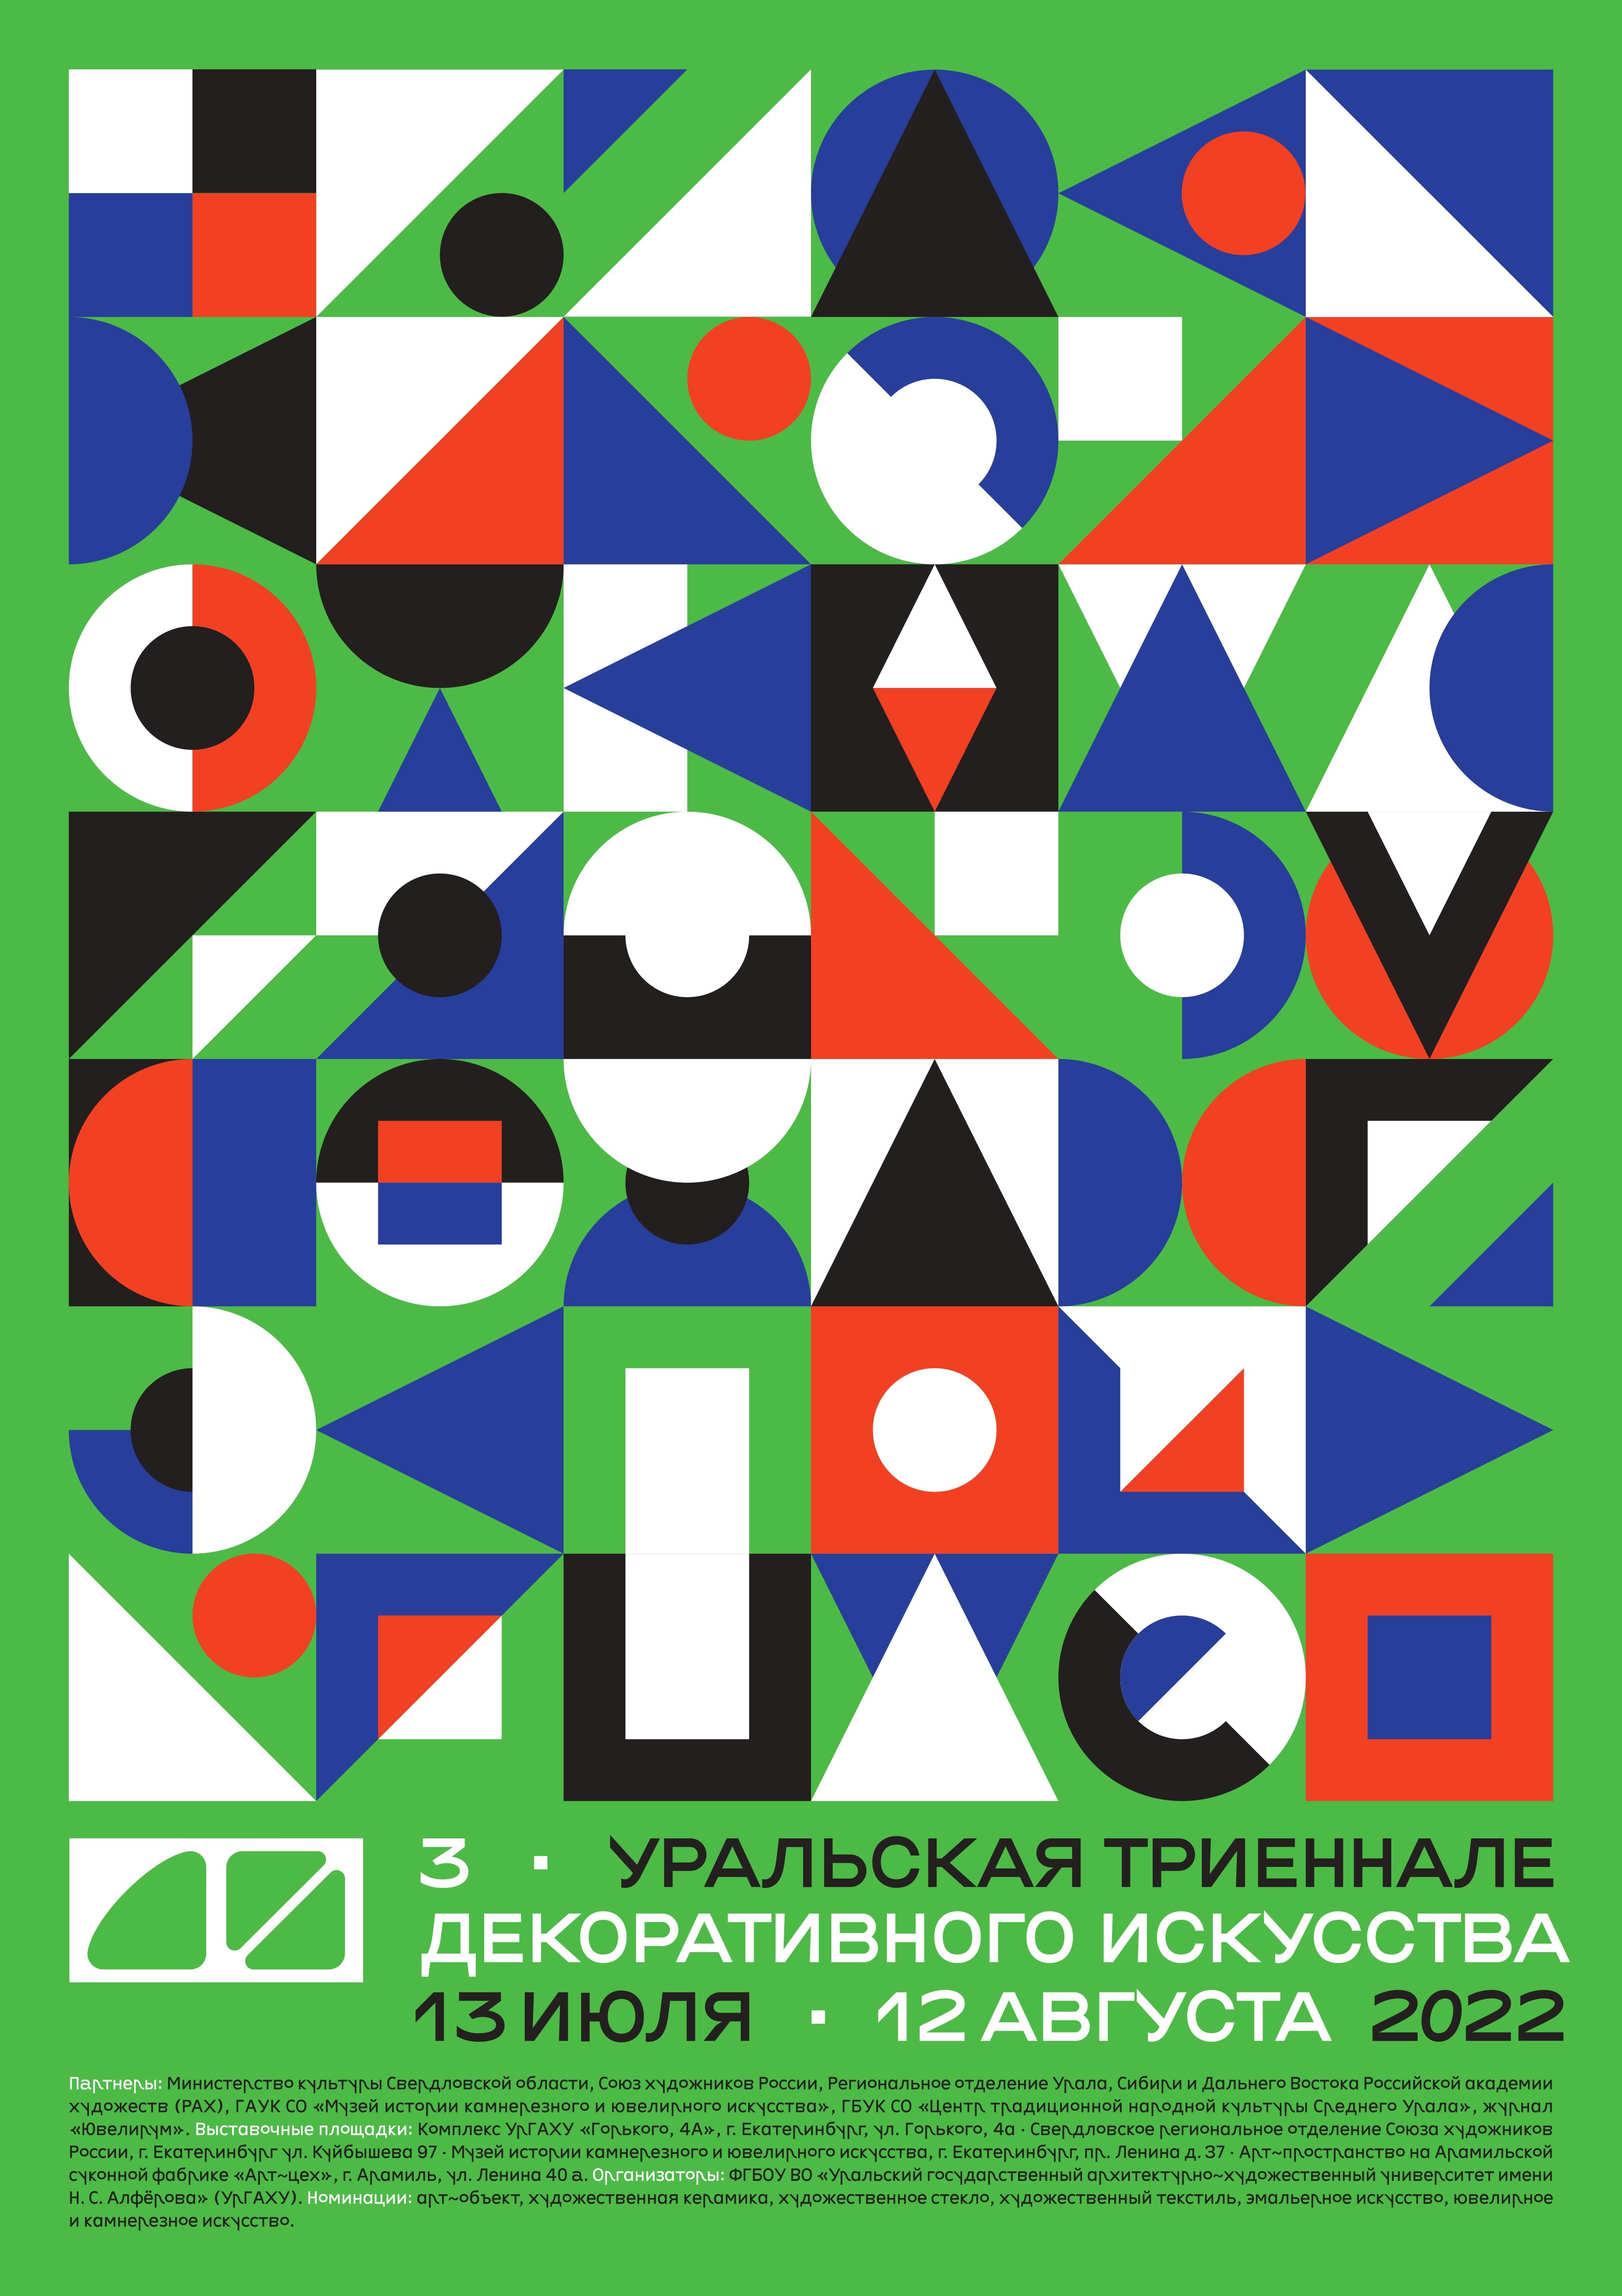 В Екатеринбурге третий раз пройдет Уральская триеннале декоративного искусства